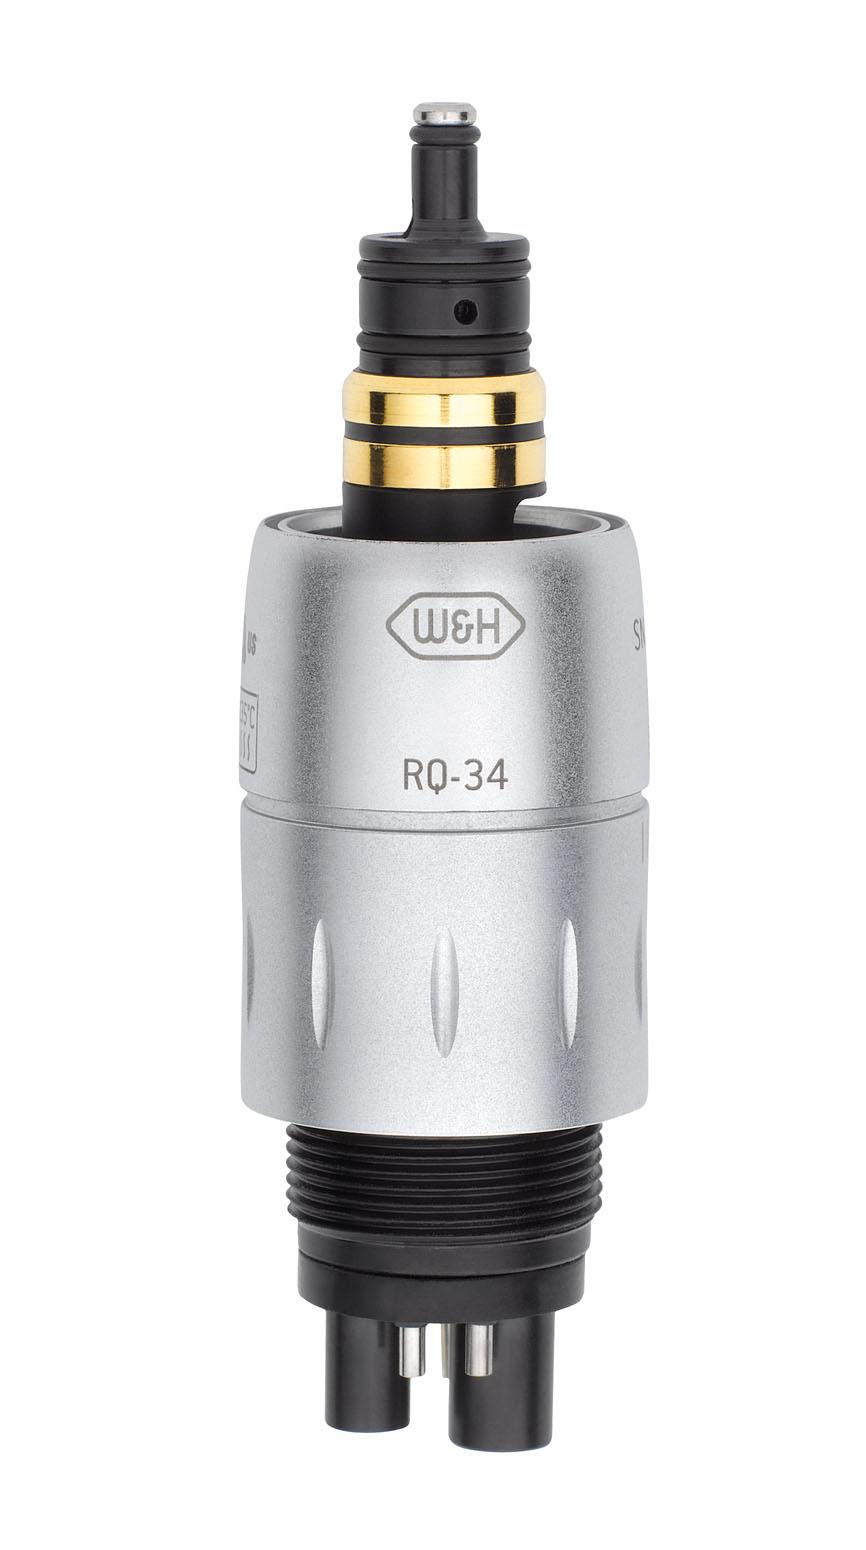 W&H RQ-34, Roto-Quick Lichtkupplung für Turbinen und Luftmotoren Rücksaugstopp, Sprayregelung